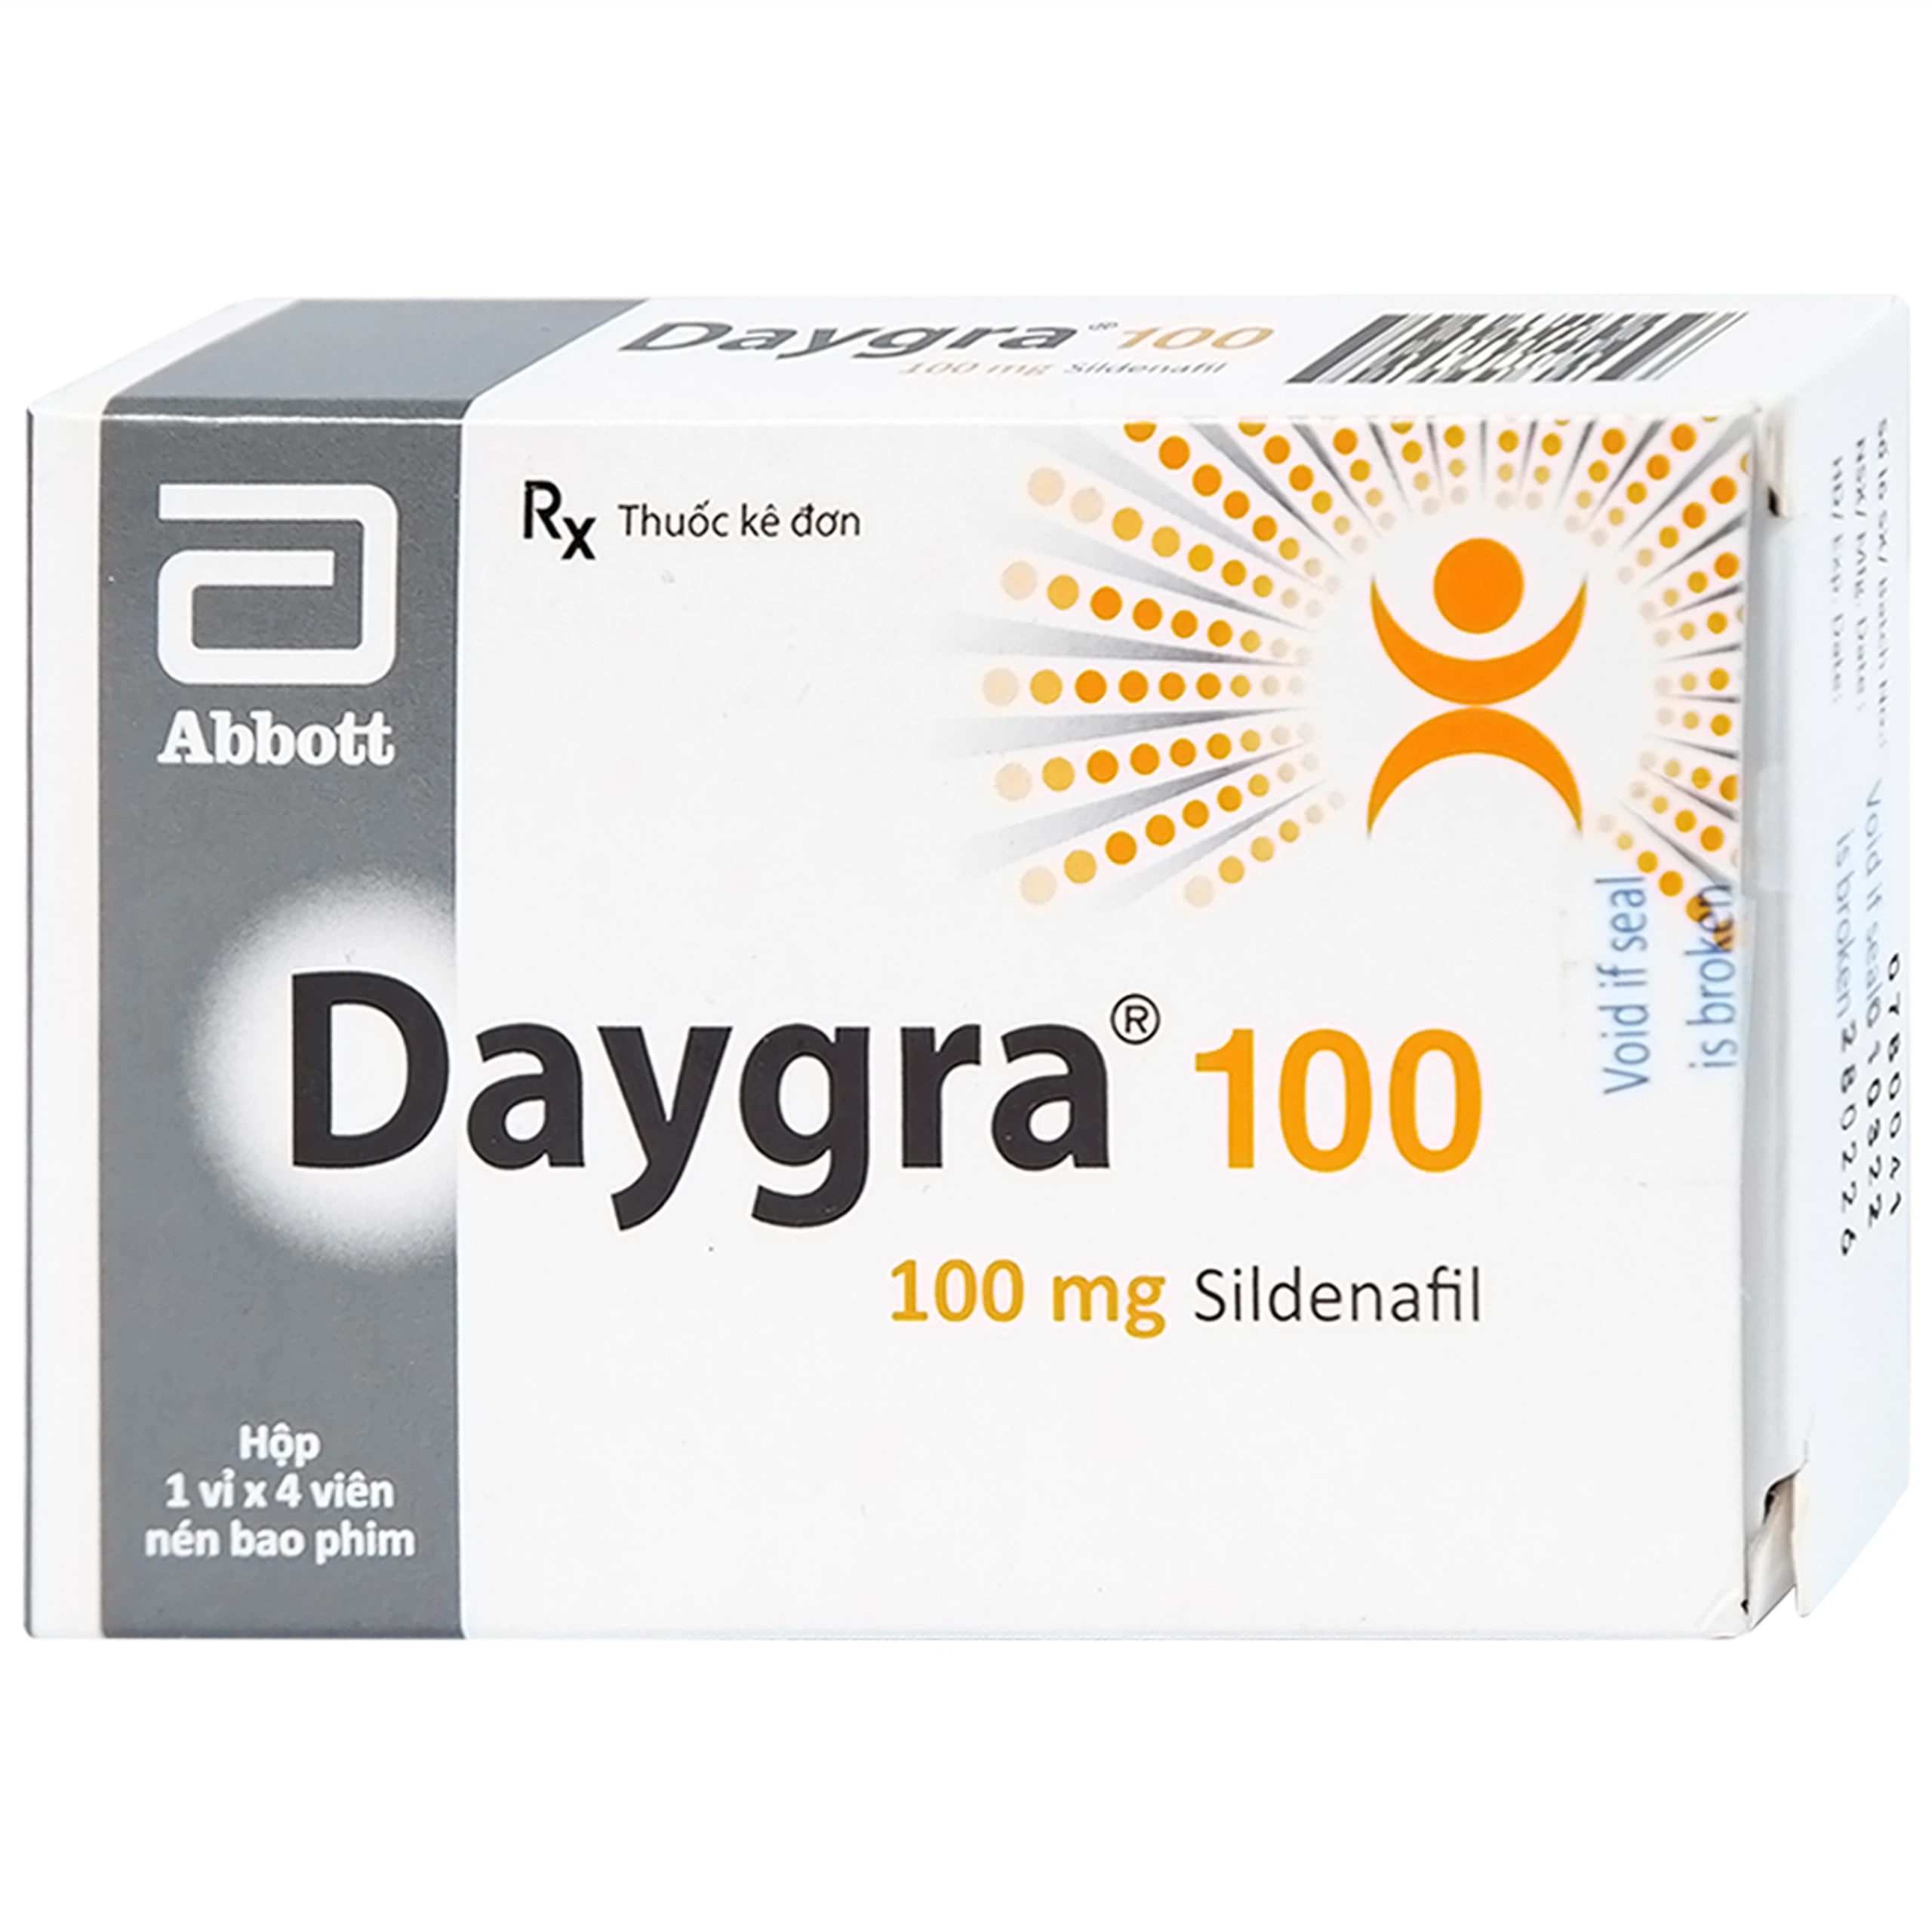 Thuốc Daygra 100 Abbott điều trị rối loạn cương dương (1 vỉ x 4 viên)